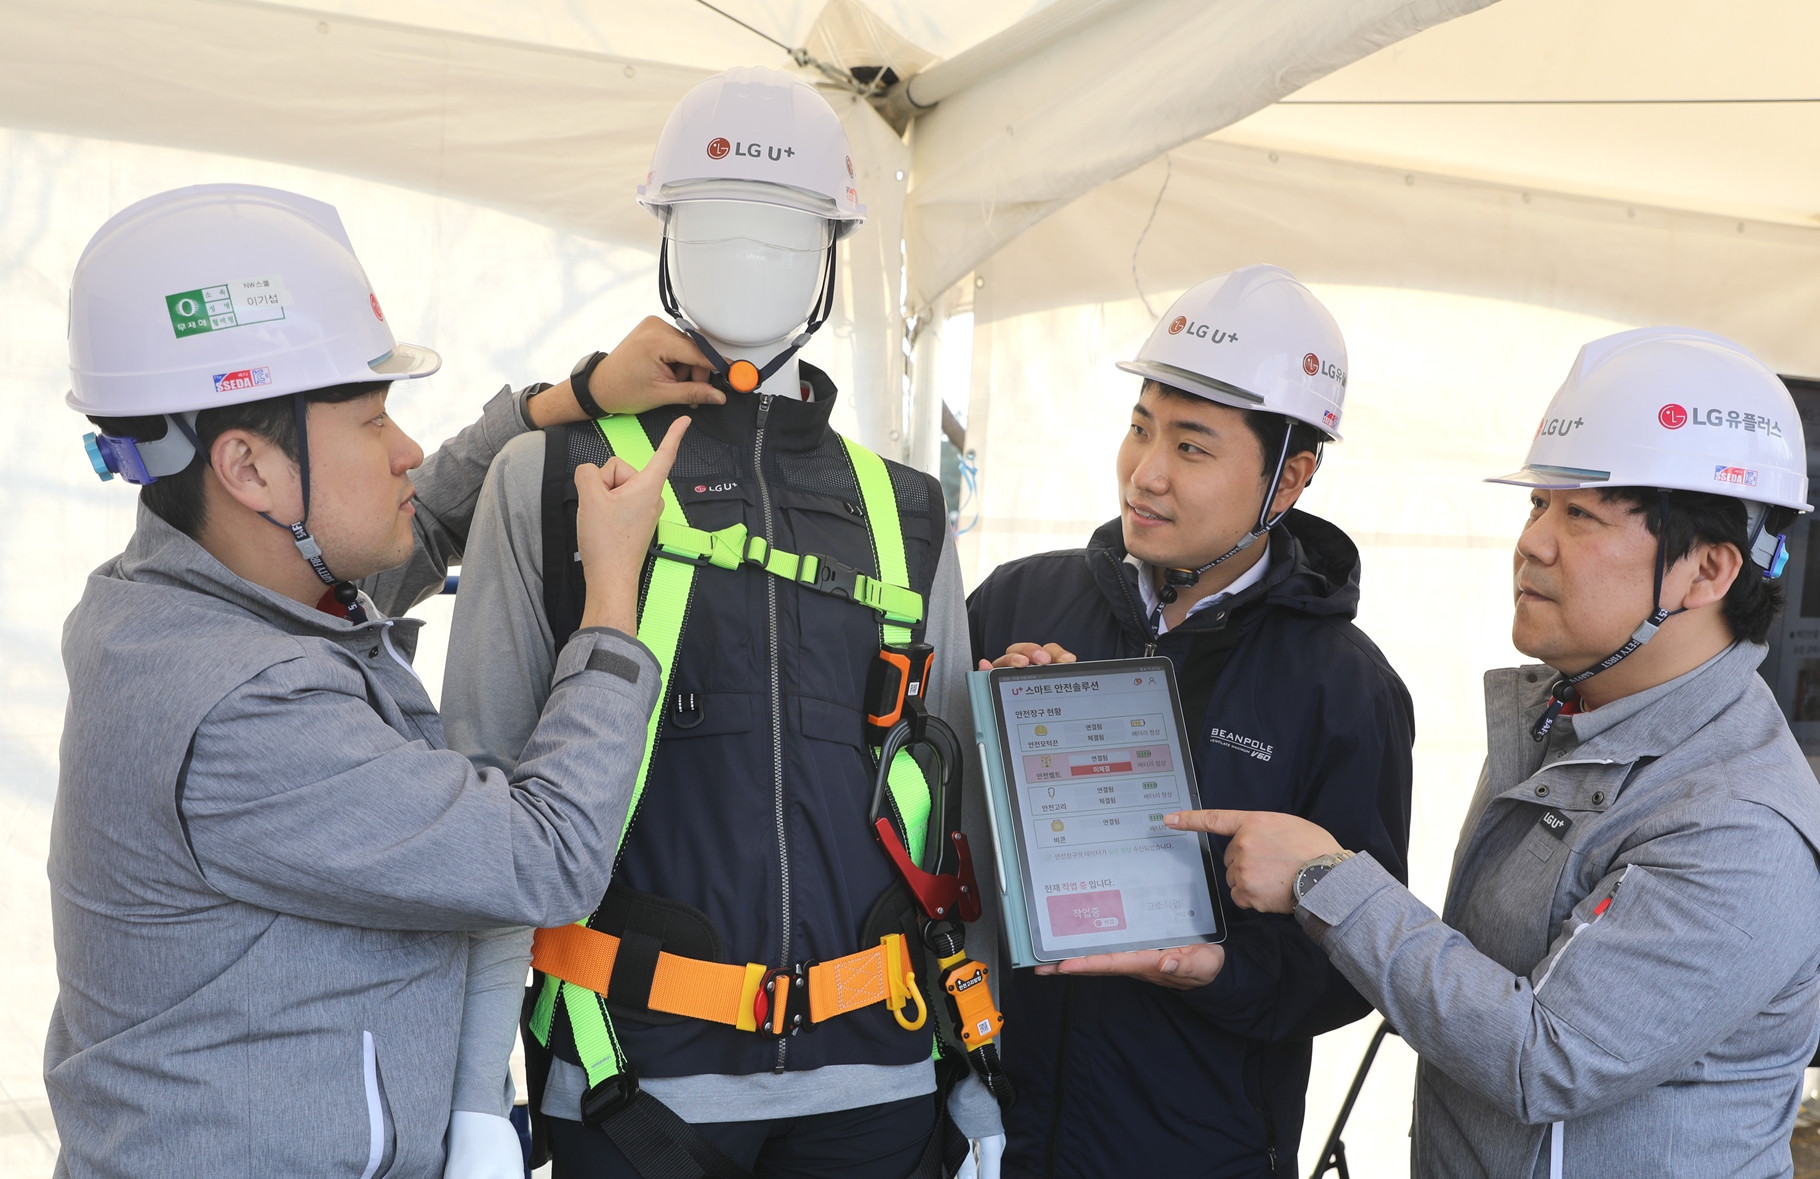 설치 작업 현장에서 근로자들이 손쉽게 스마트 안전장구를 사용하고, 안전한 작업환경이 조성되는 것을 확인하는 모습